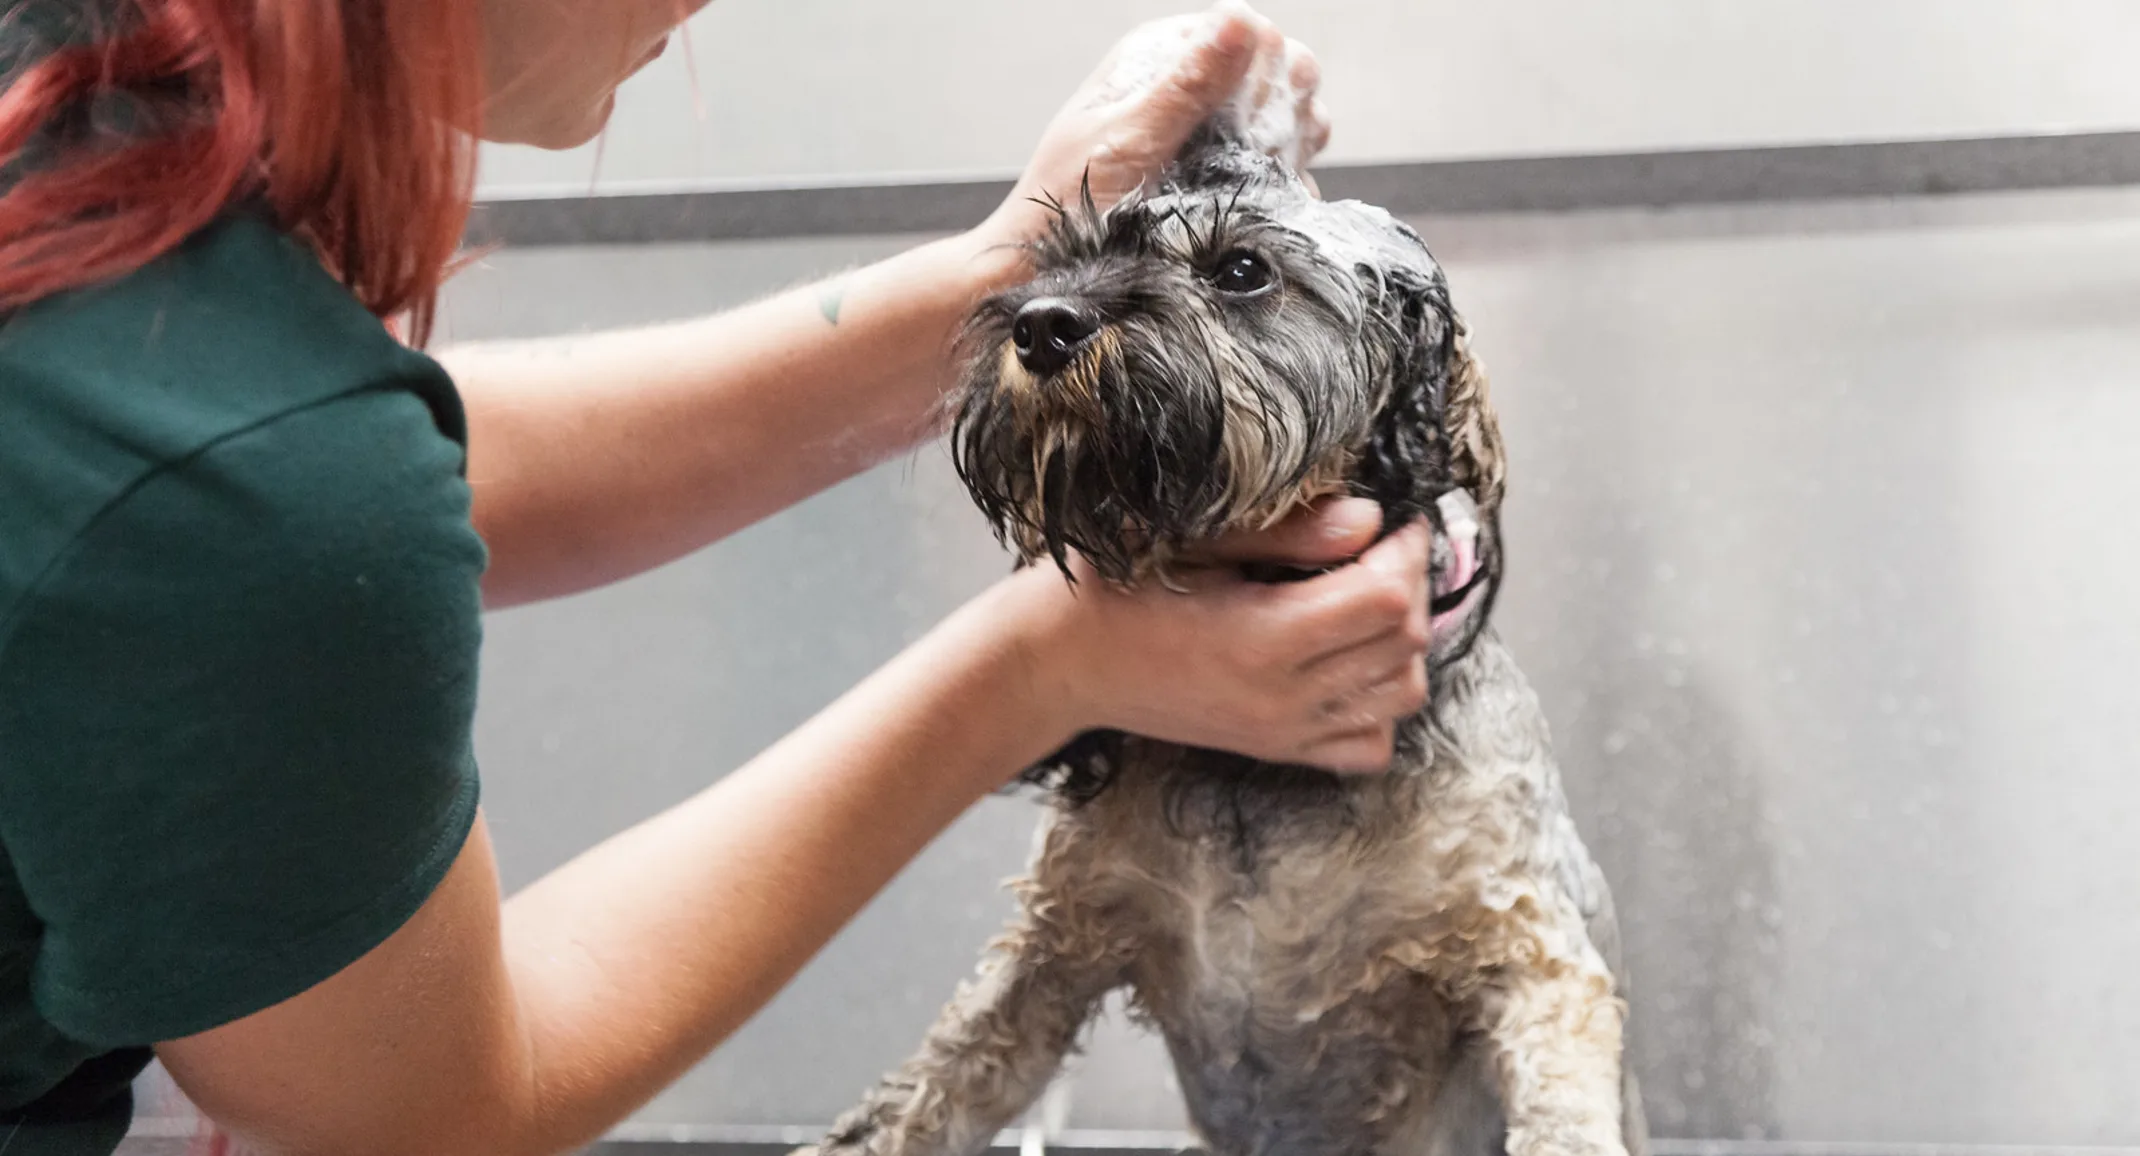 Dog getting a bath with soap